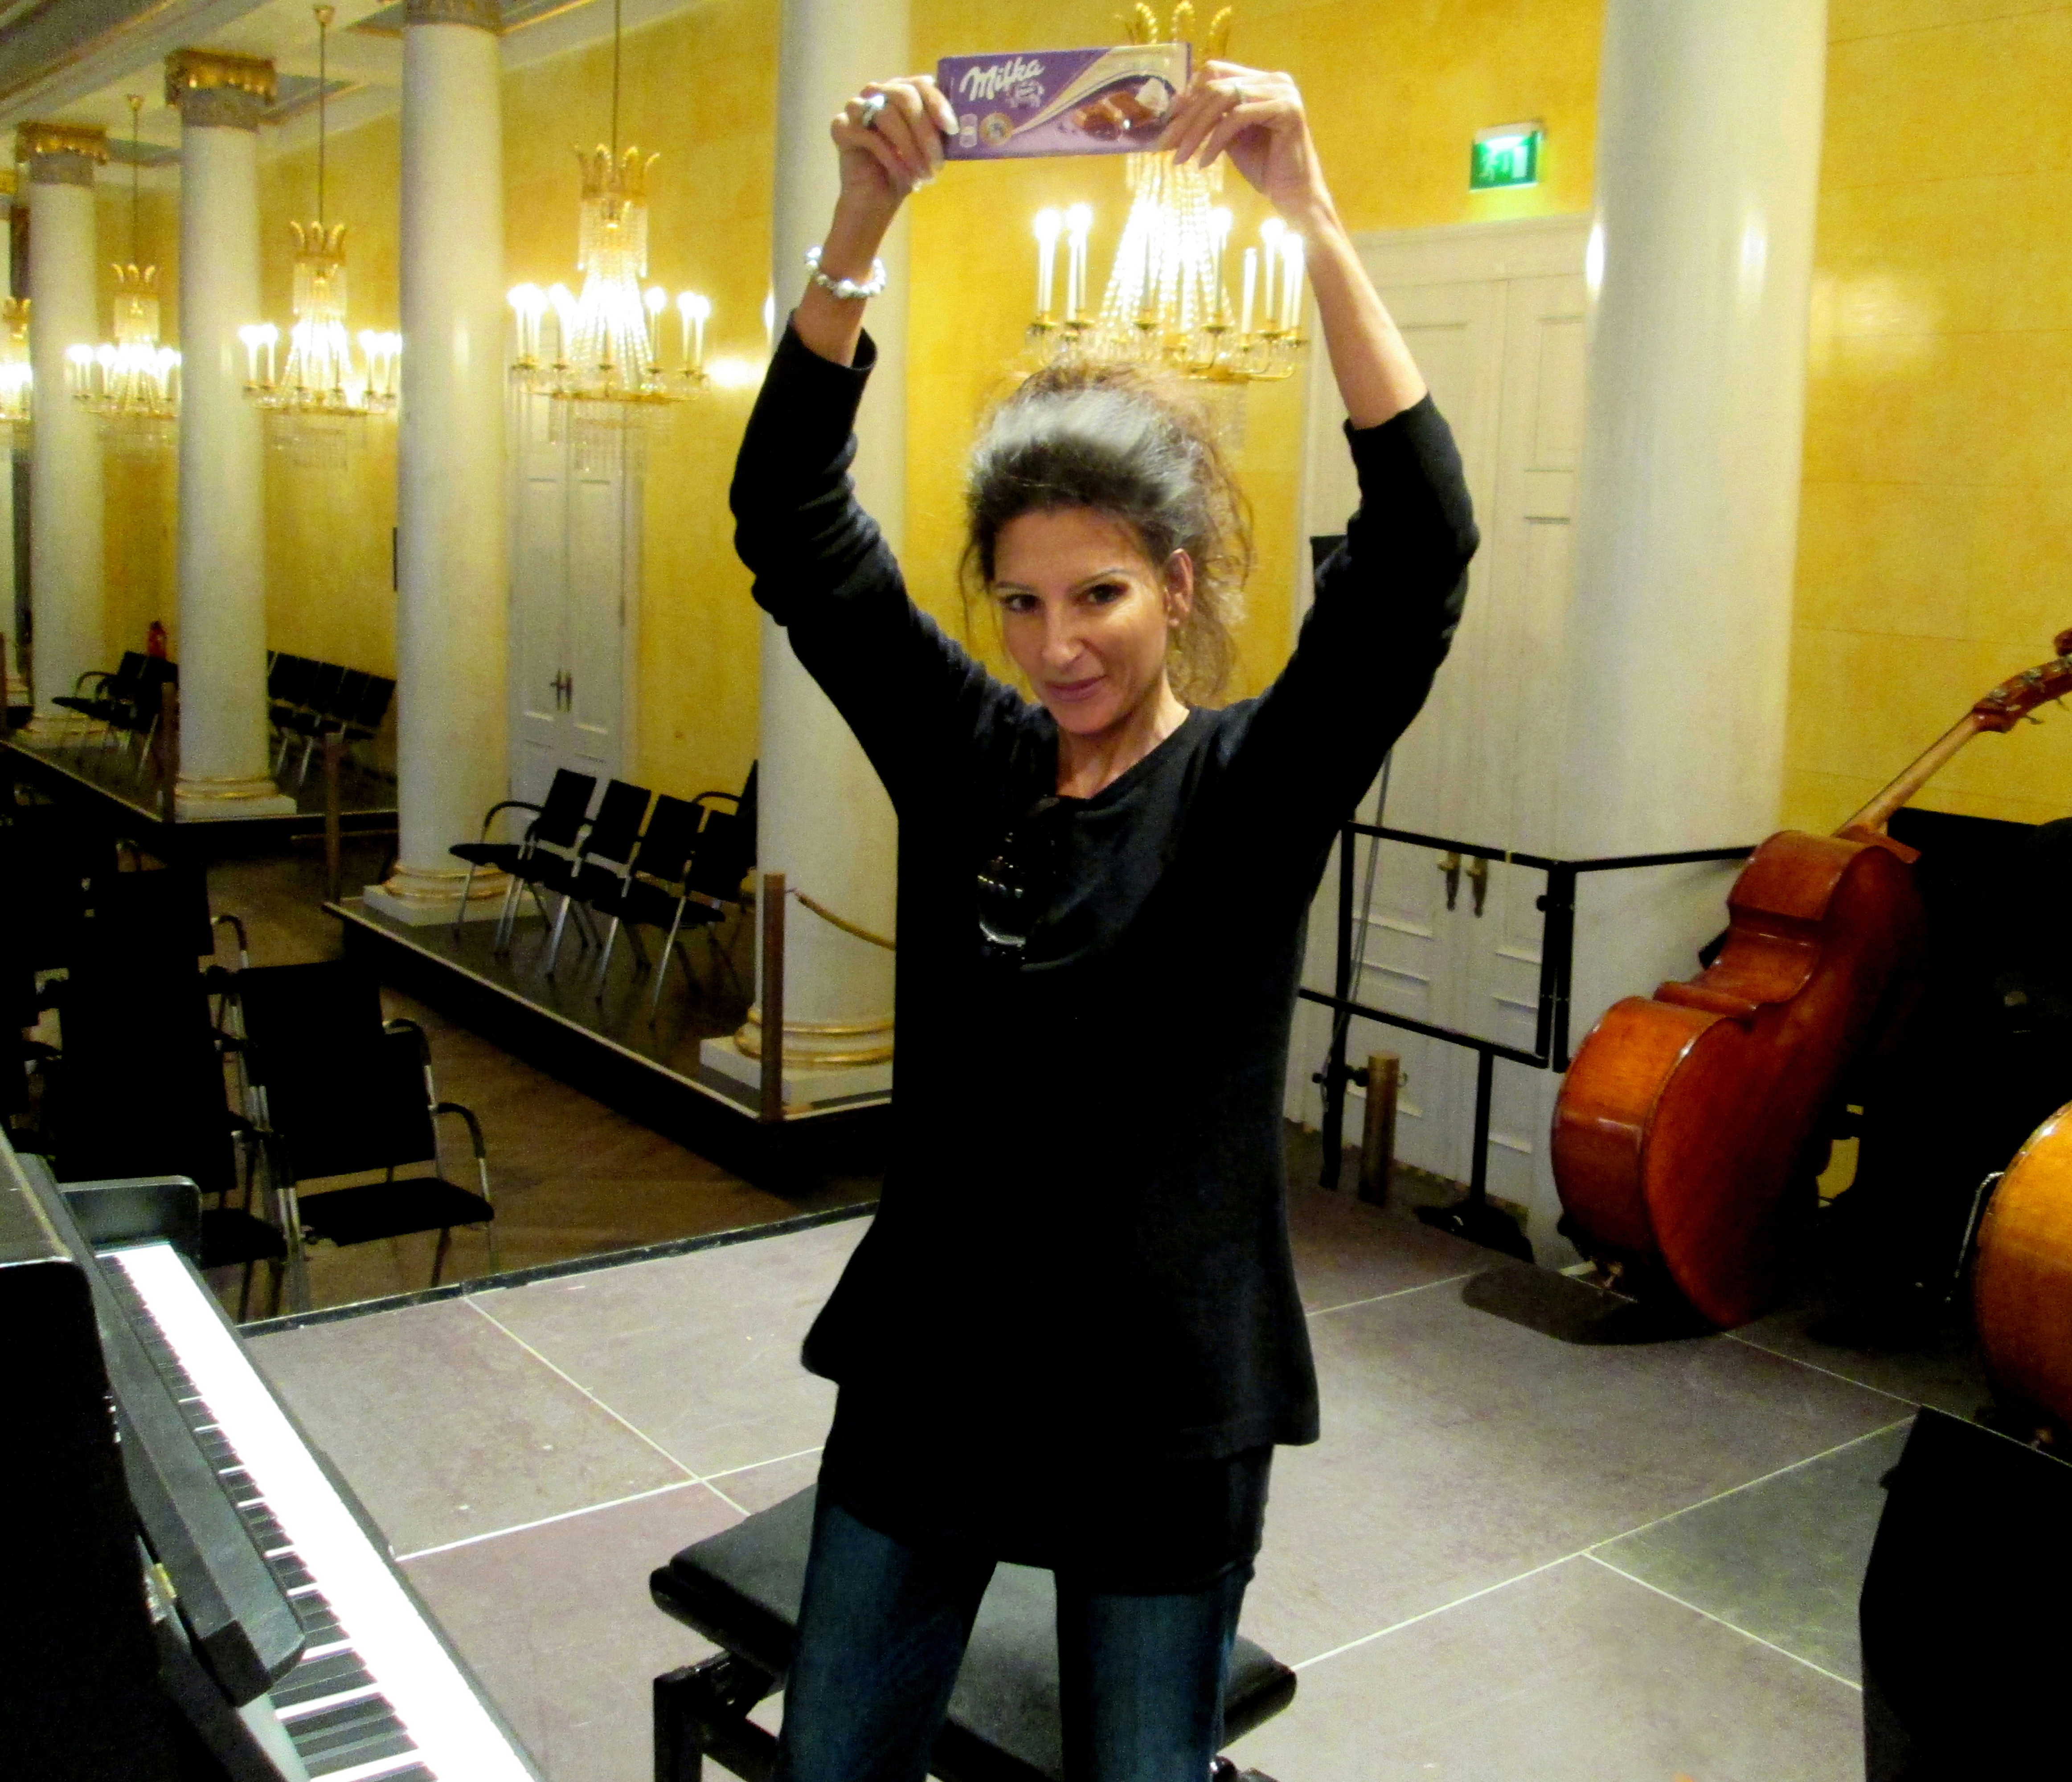 Lucia Aliberti⚘Regensburg Theater⚘Regensburg⚘Concert⚘Lucia loves Milka Chocolade⚘Break⚘Rehearsals⚘:http://www.luciaaliberti.it #luciaaliberti #regensburgtheater #regensburg #concert #rehearsals #break #milkachocolade